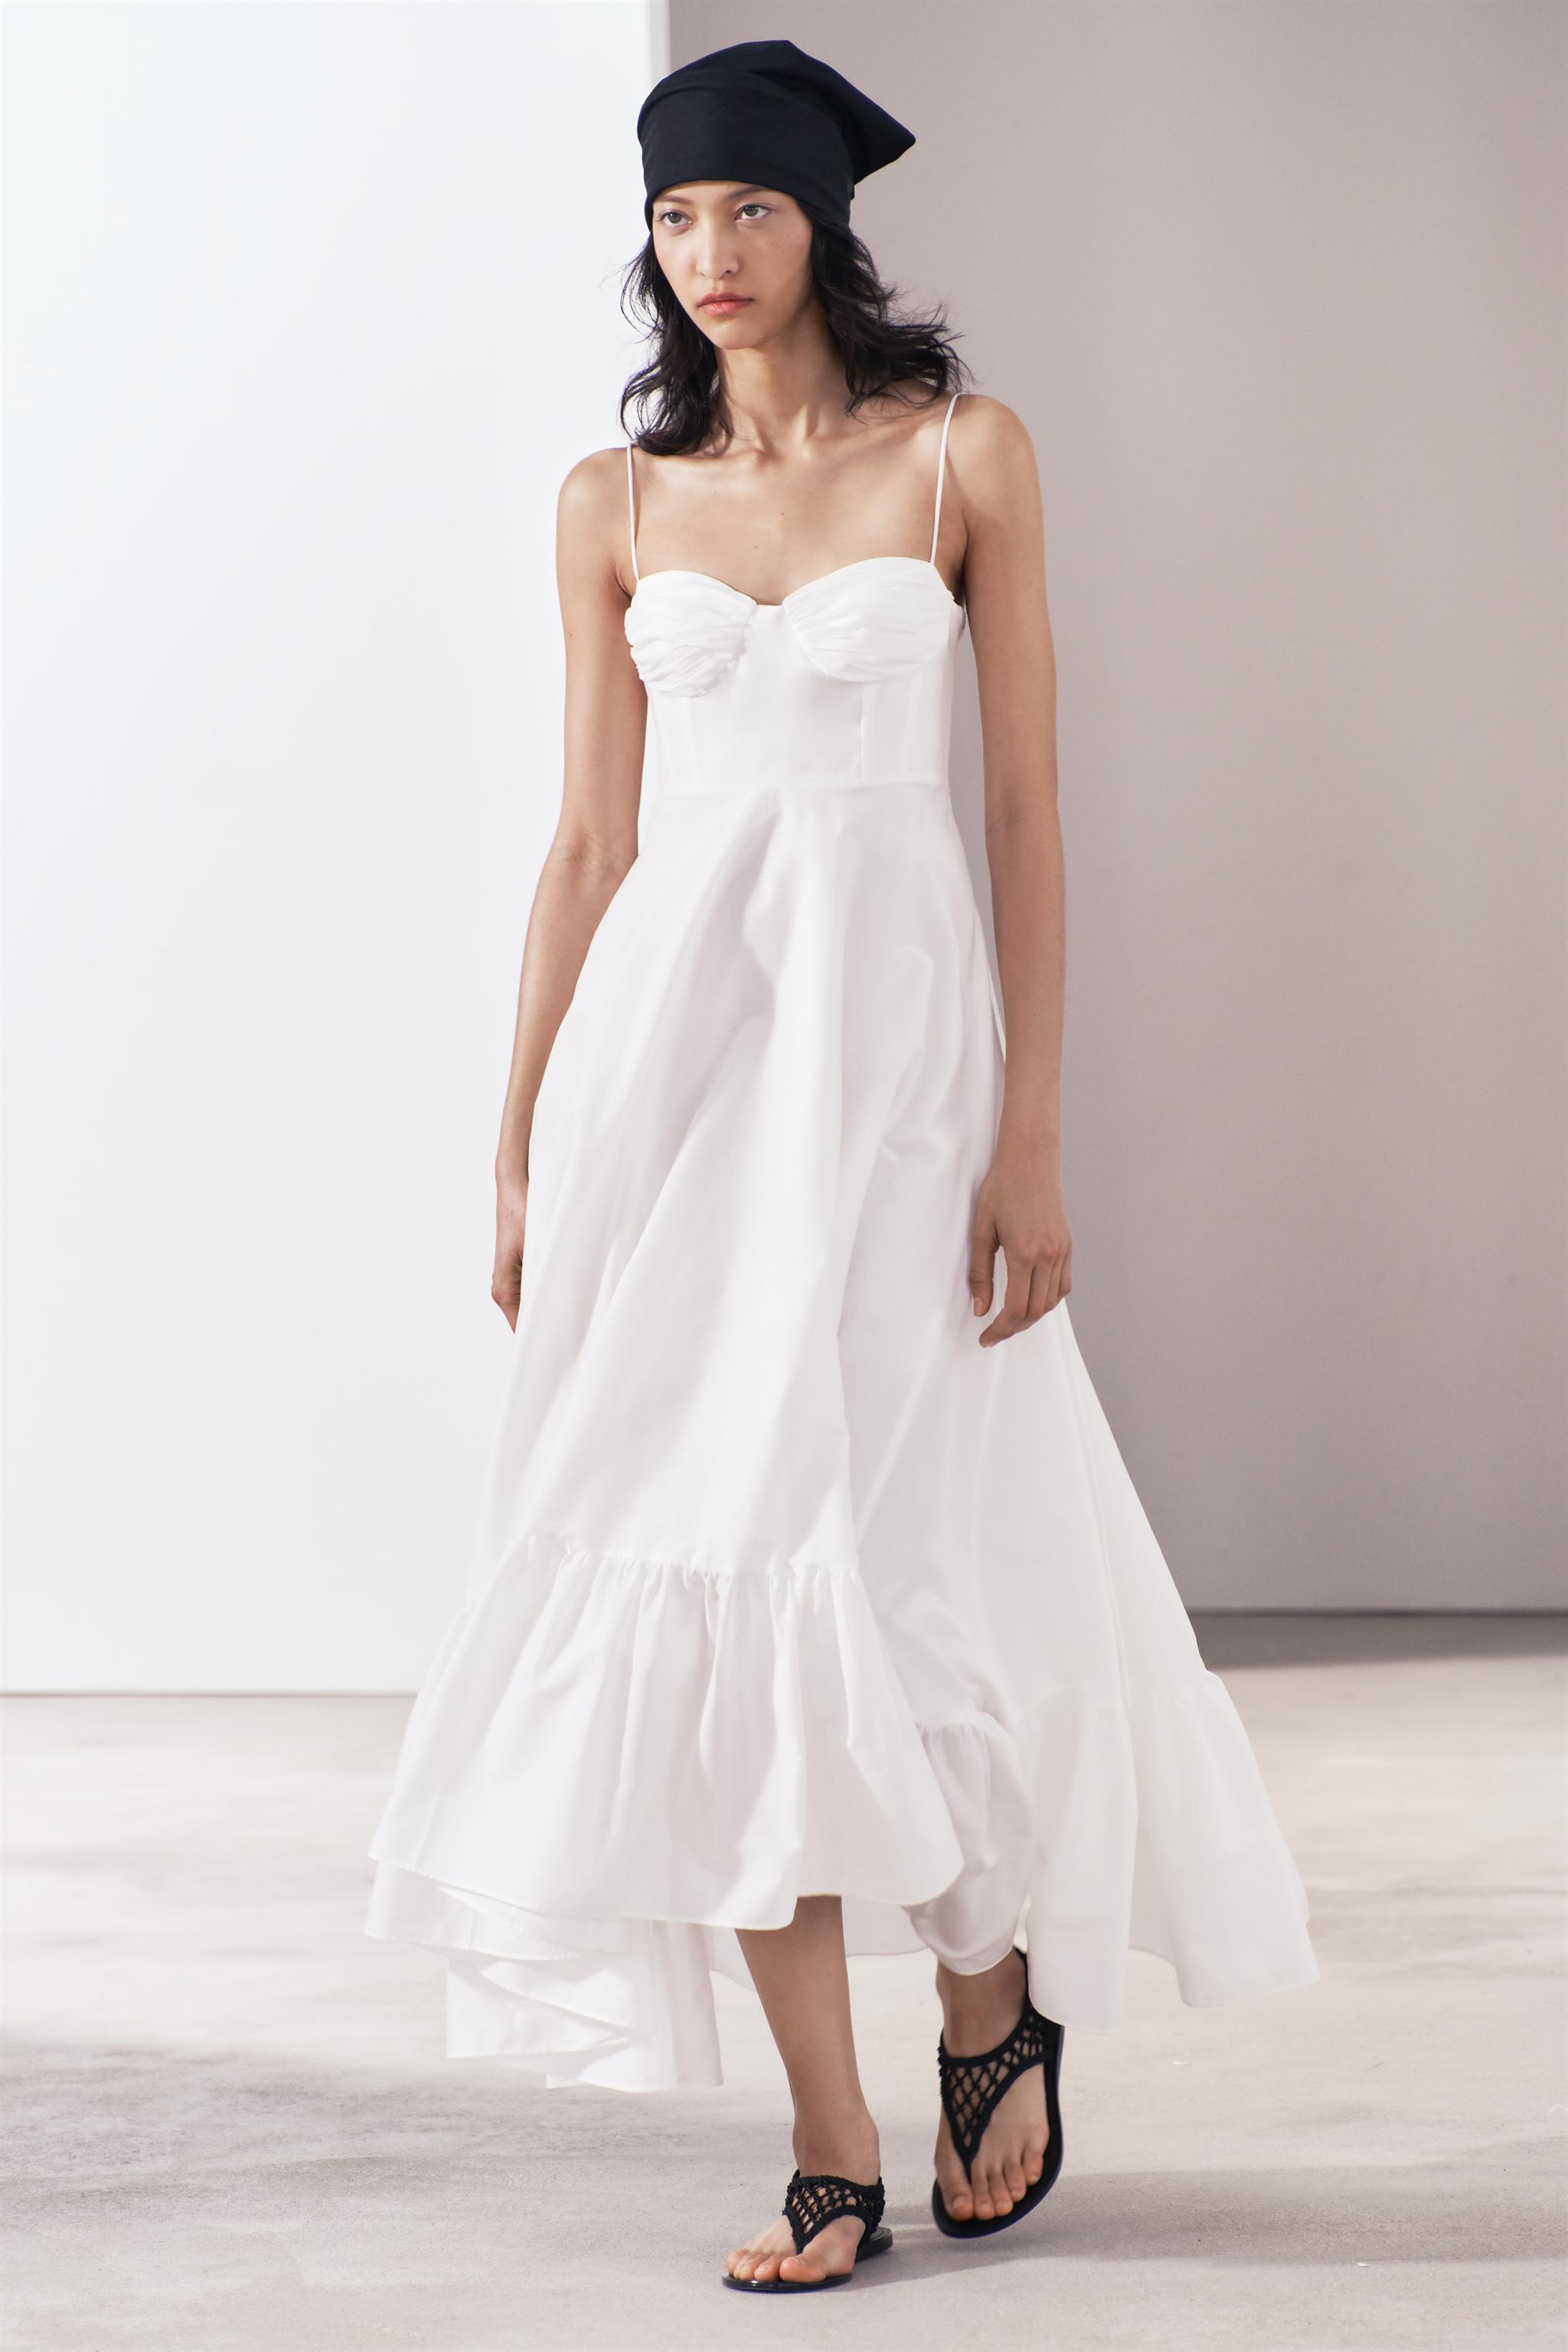 O novo vestido floral da Zara torna qualquer cintura mais fina e elegante –  NiT